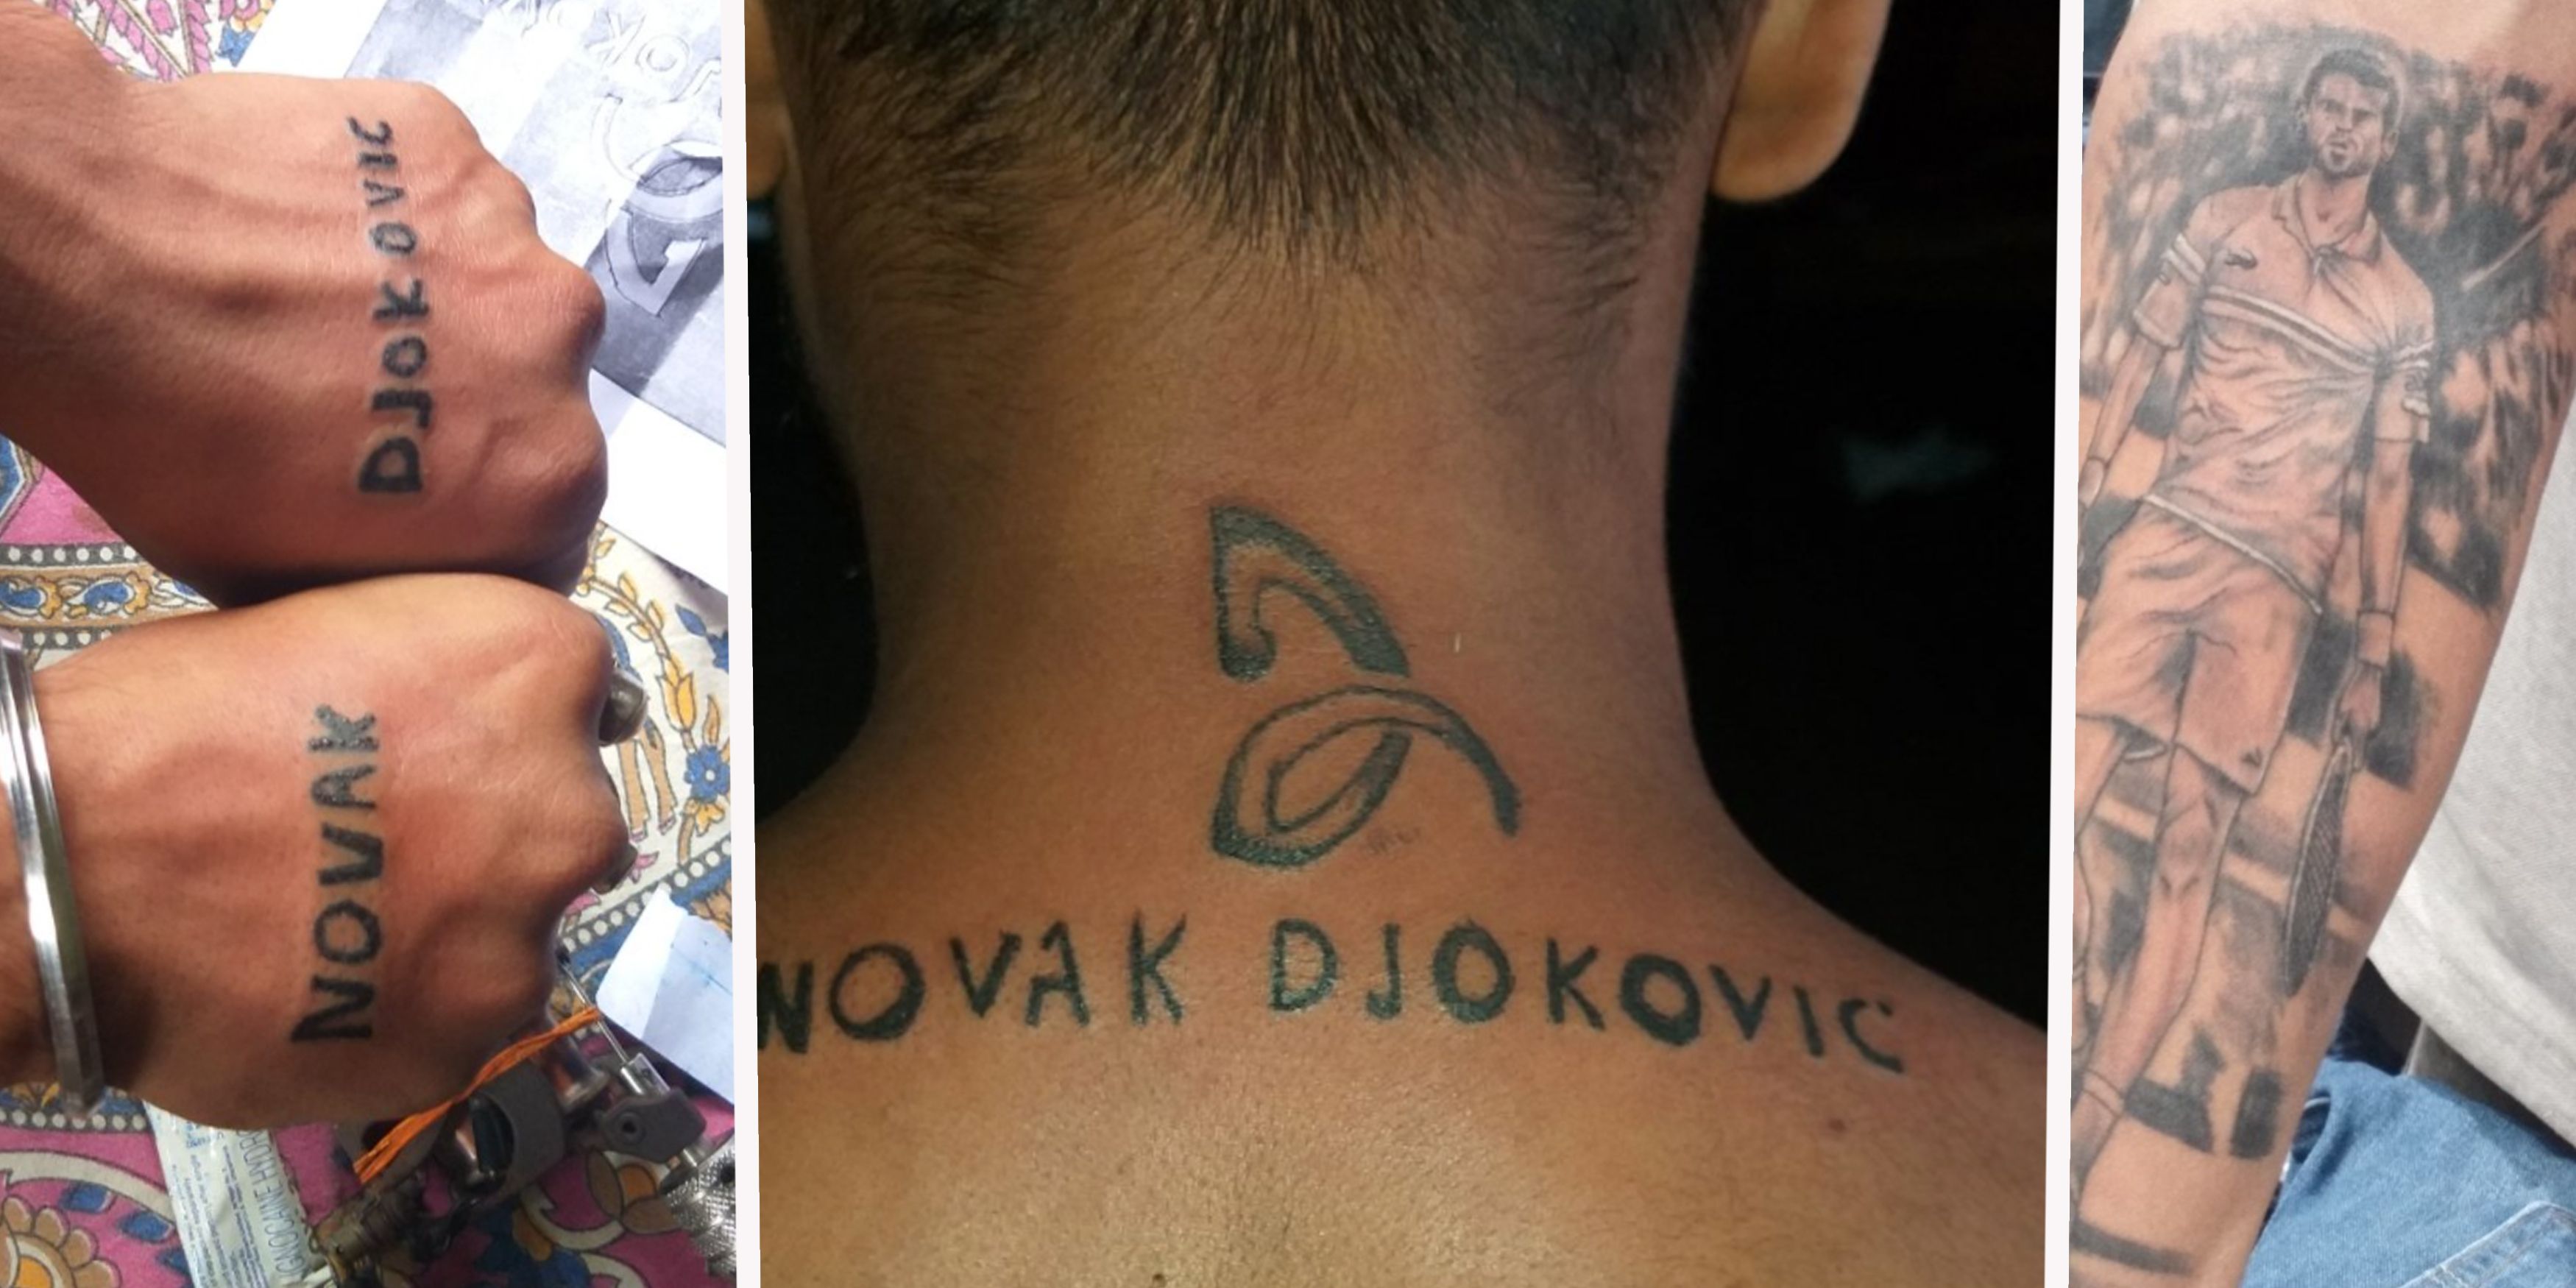 TO JE TO, GASI INTERNET! Mojoj sreci nema kraja ❤️ Hvala @djokernole # novakdjokovic #tattoo #goat #tenis #atp #nole | Instagram